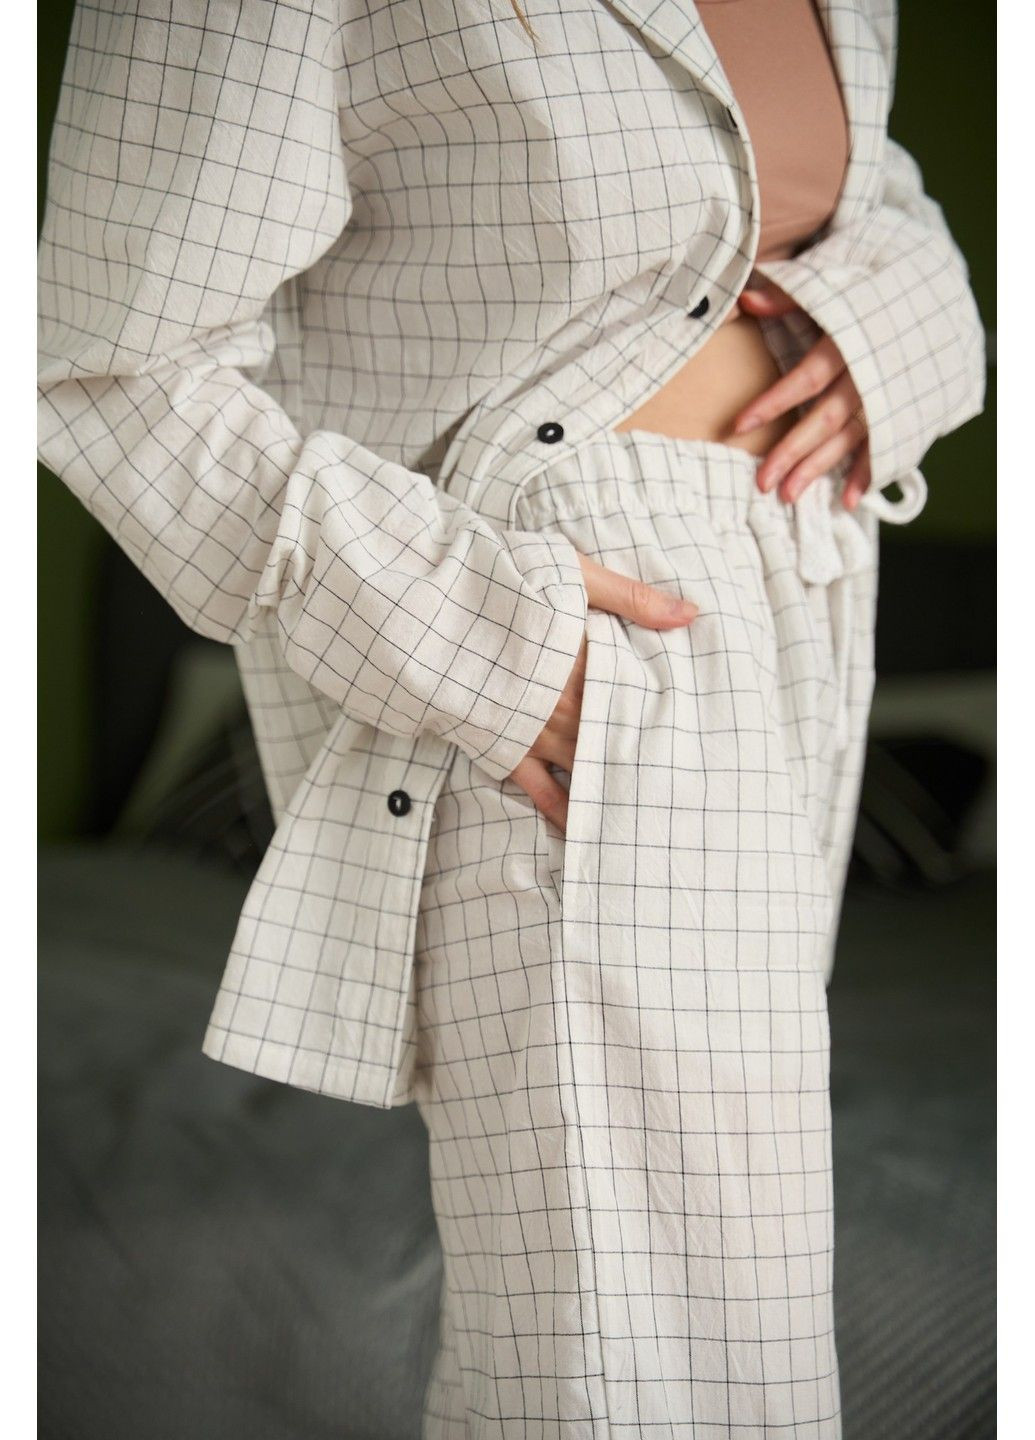 Молочная всесезон пижама женская в клеточку вареный хлопок homely молочная Handy Wear